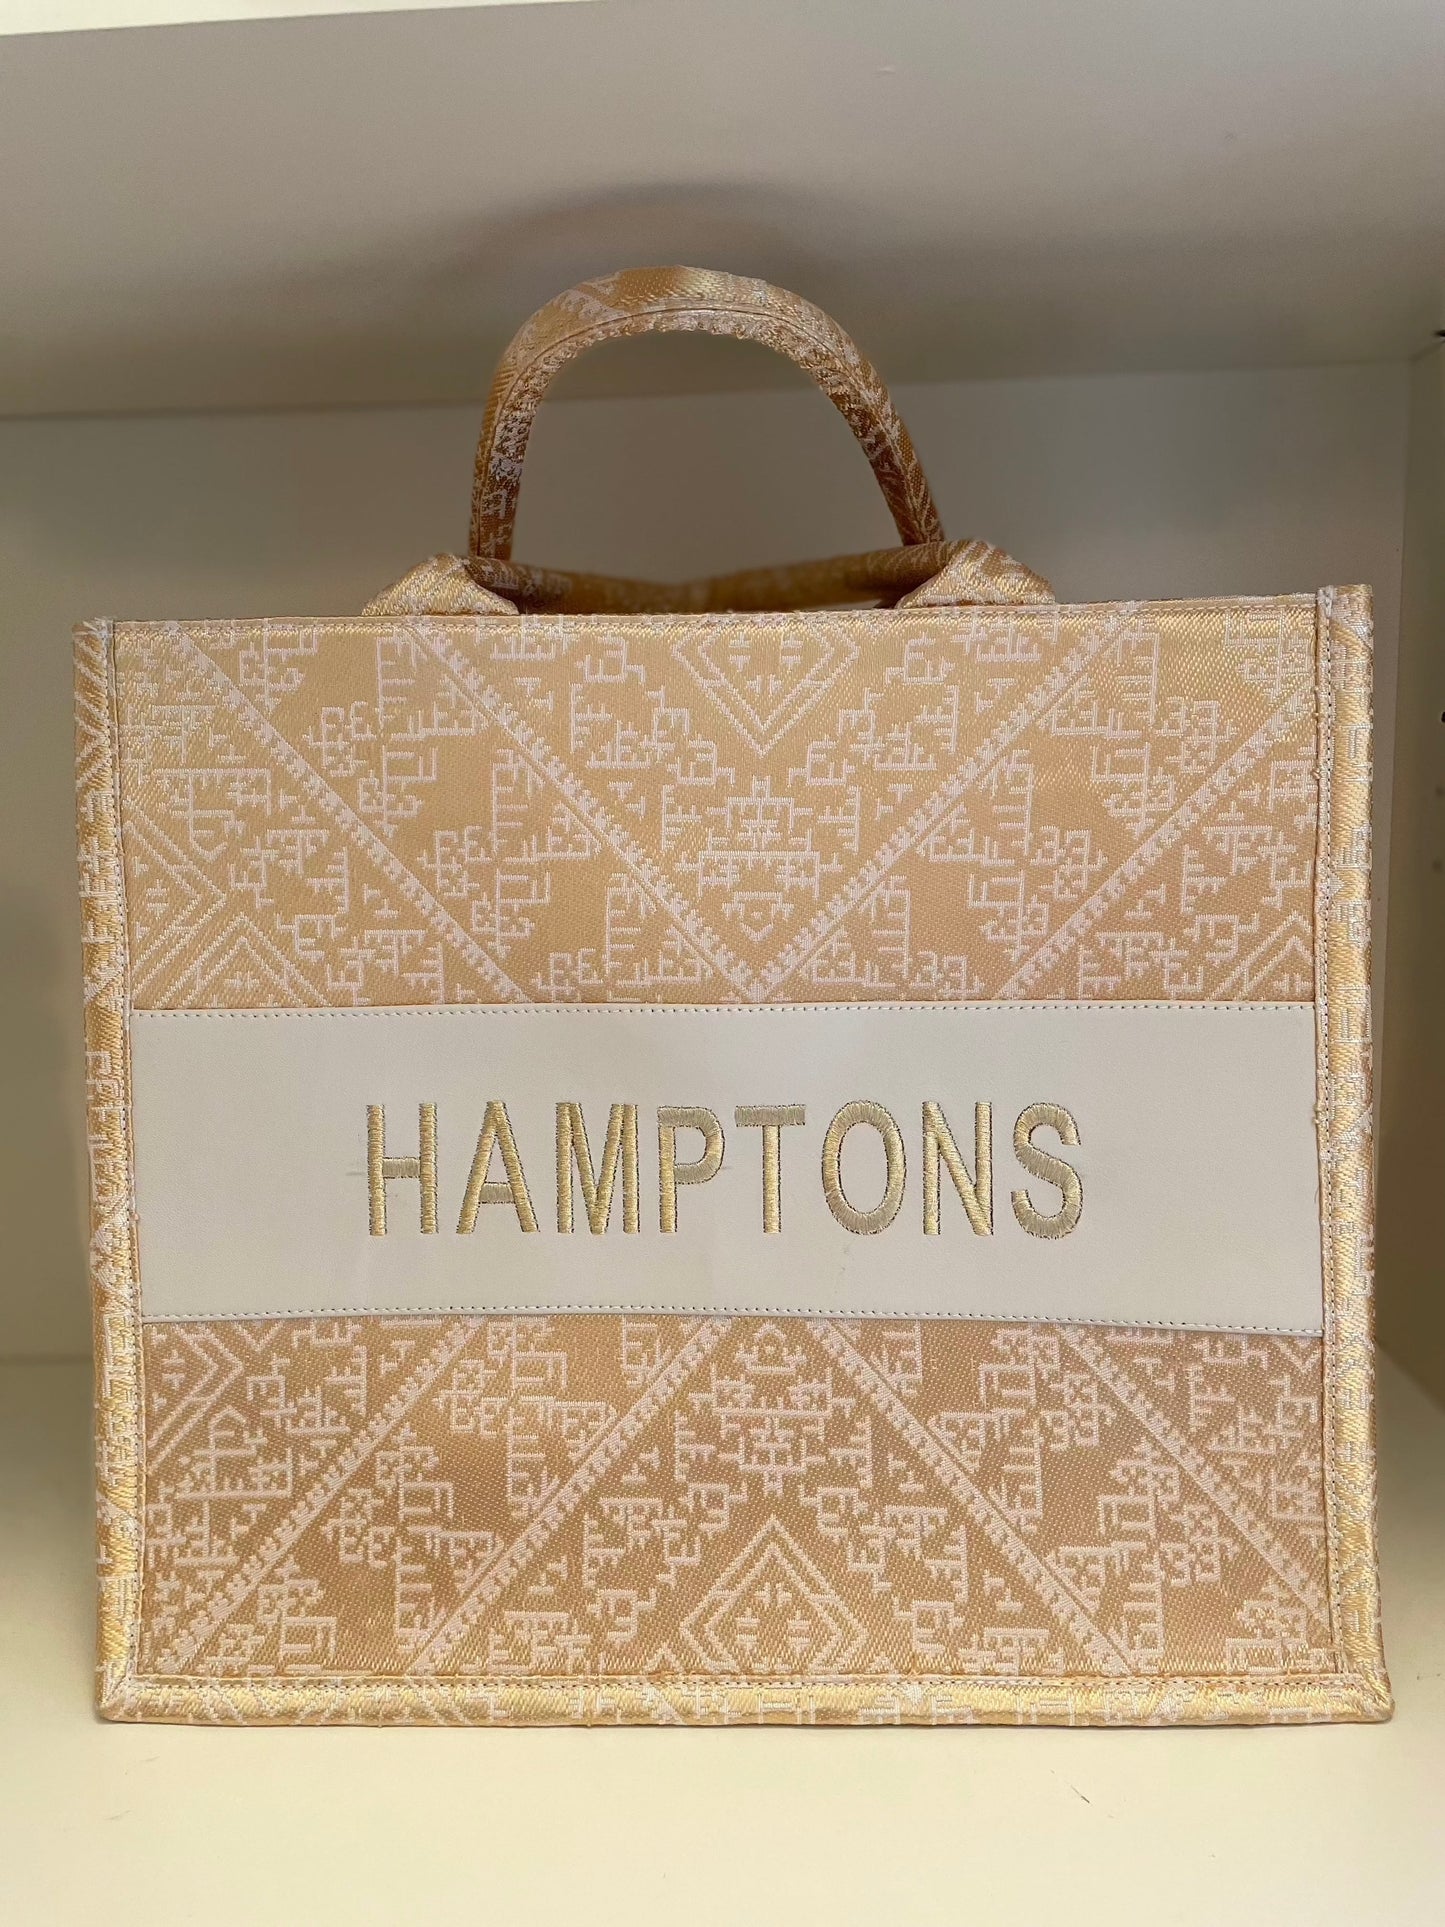 Large Tote CD Hamptons - Premium Bag from Marina St. Barth - Just $100! Shop now at Marina St Barth